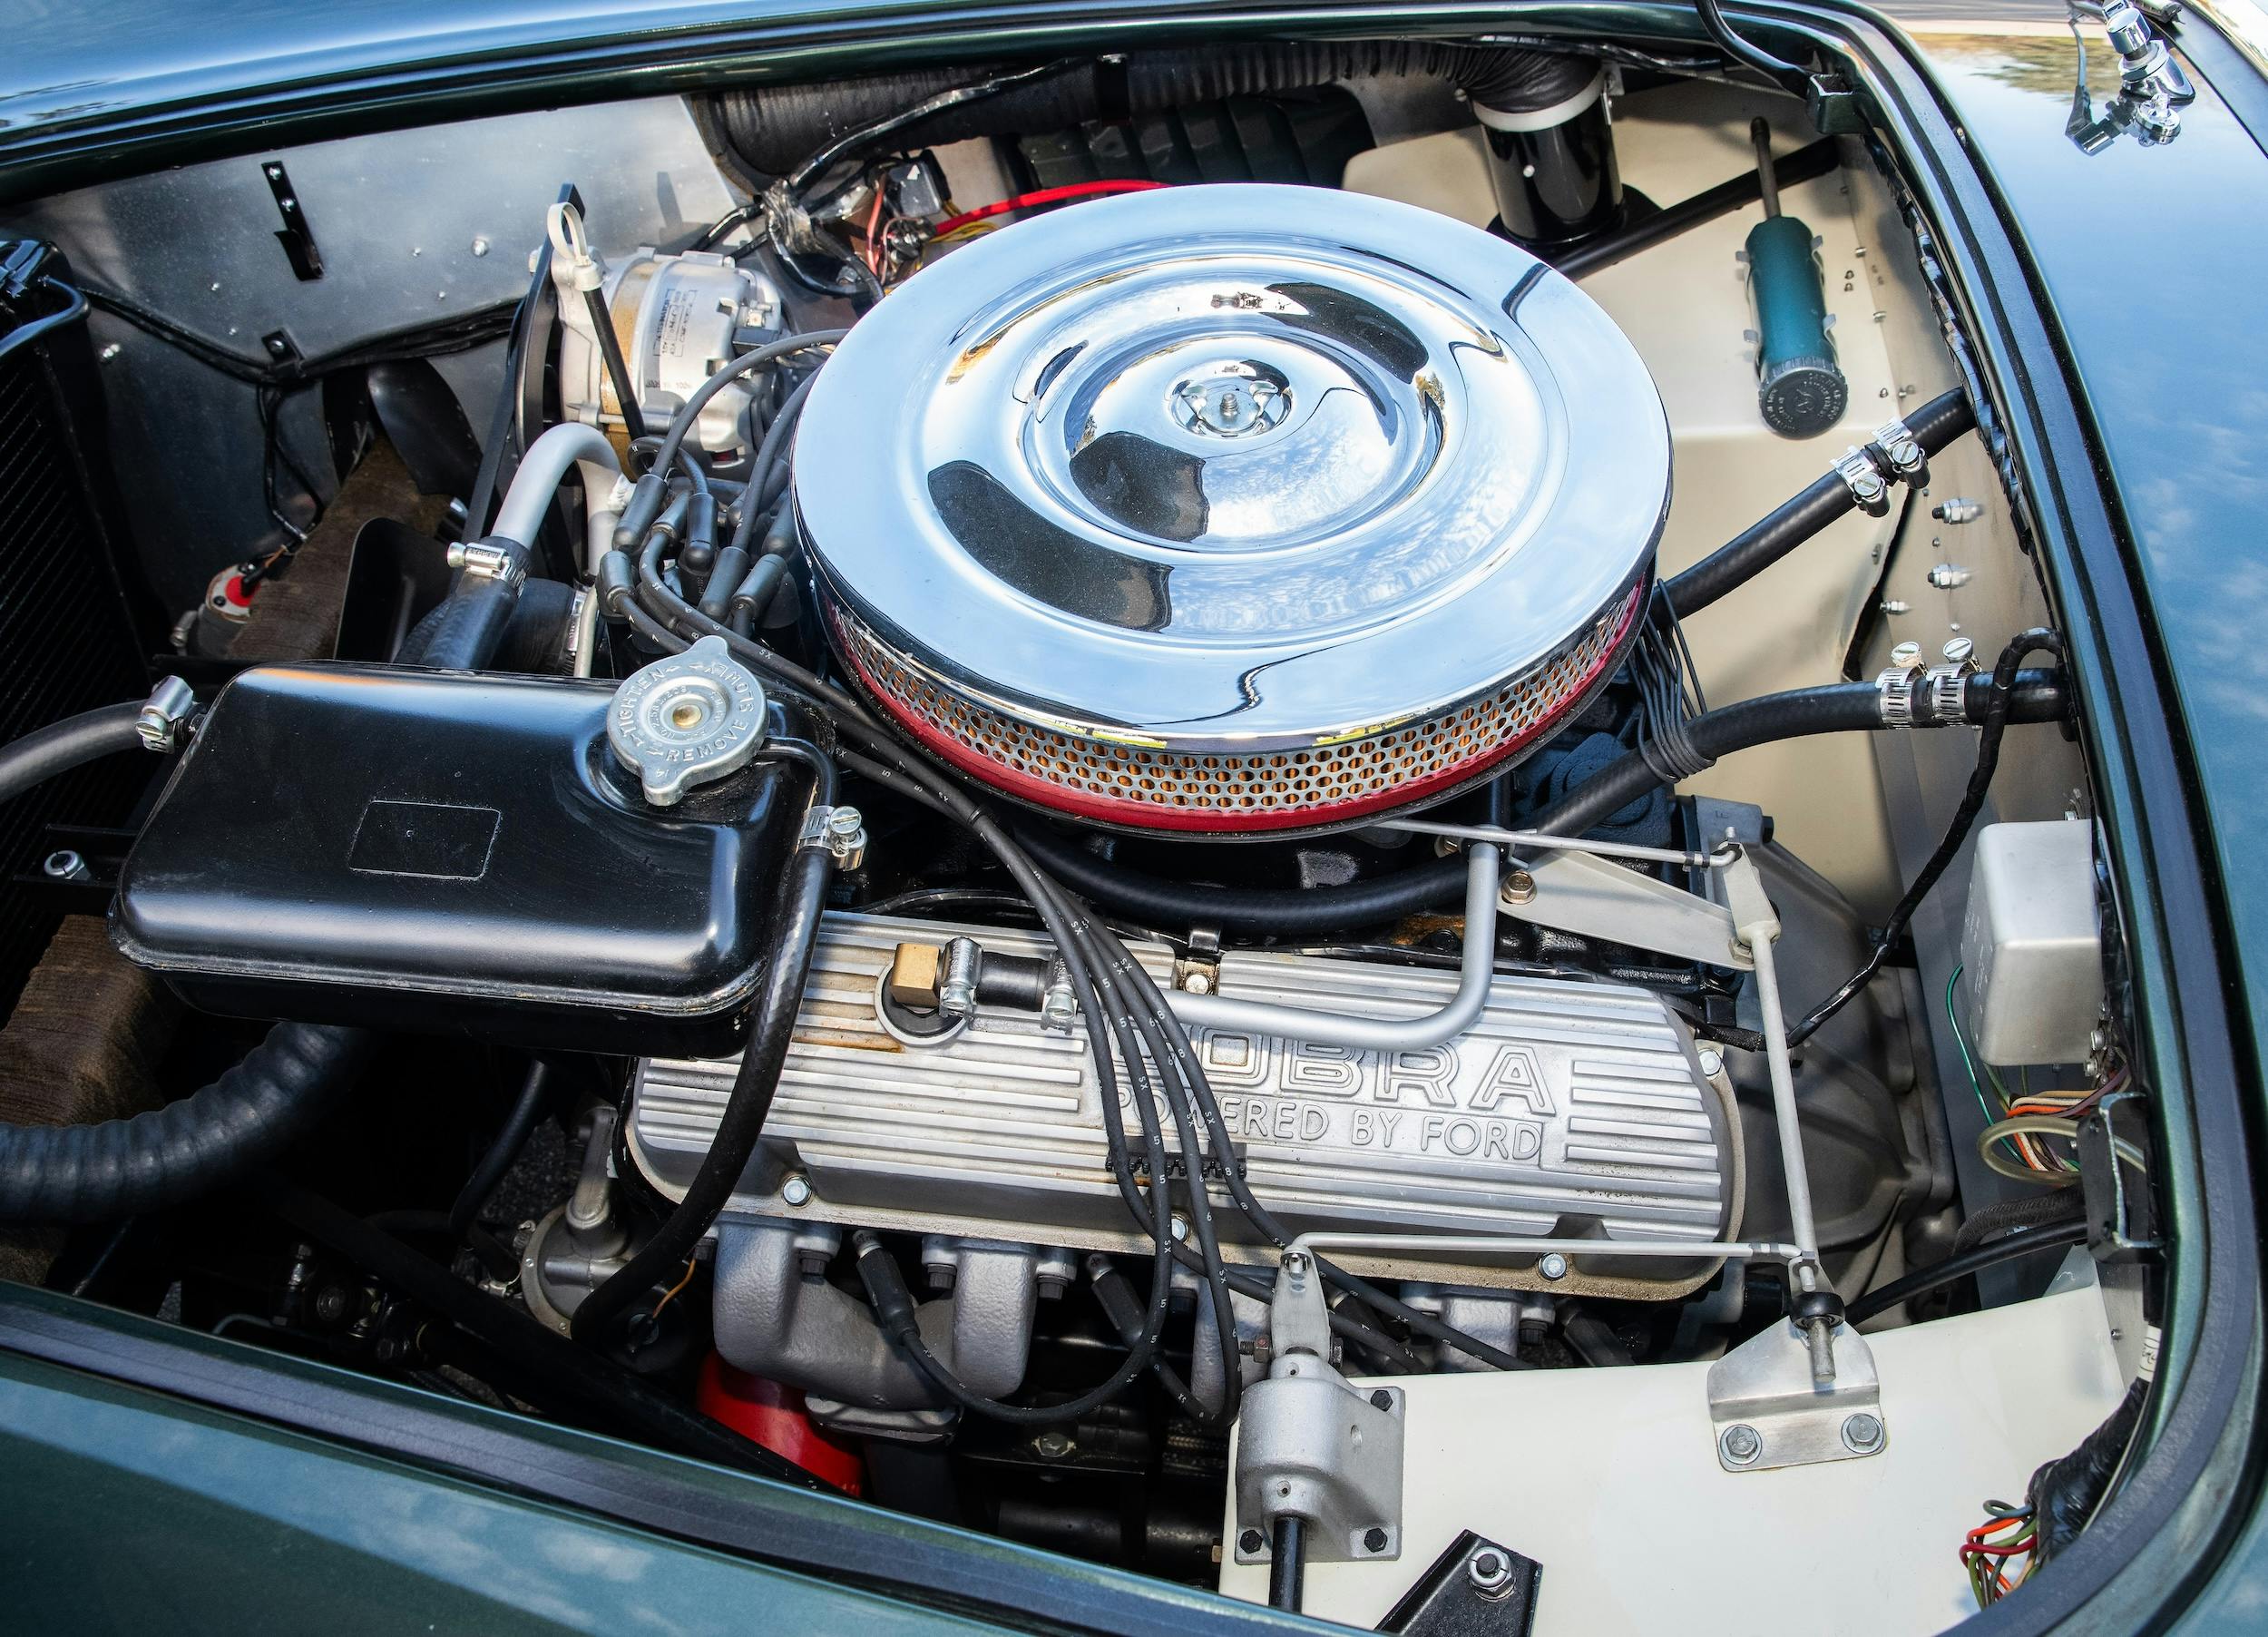 1964 Shelby Cobra engine